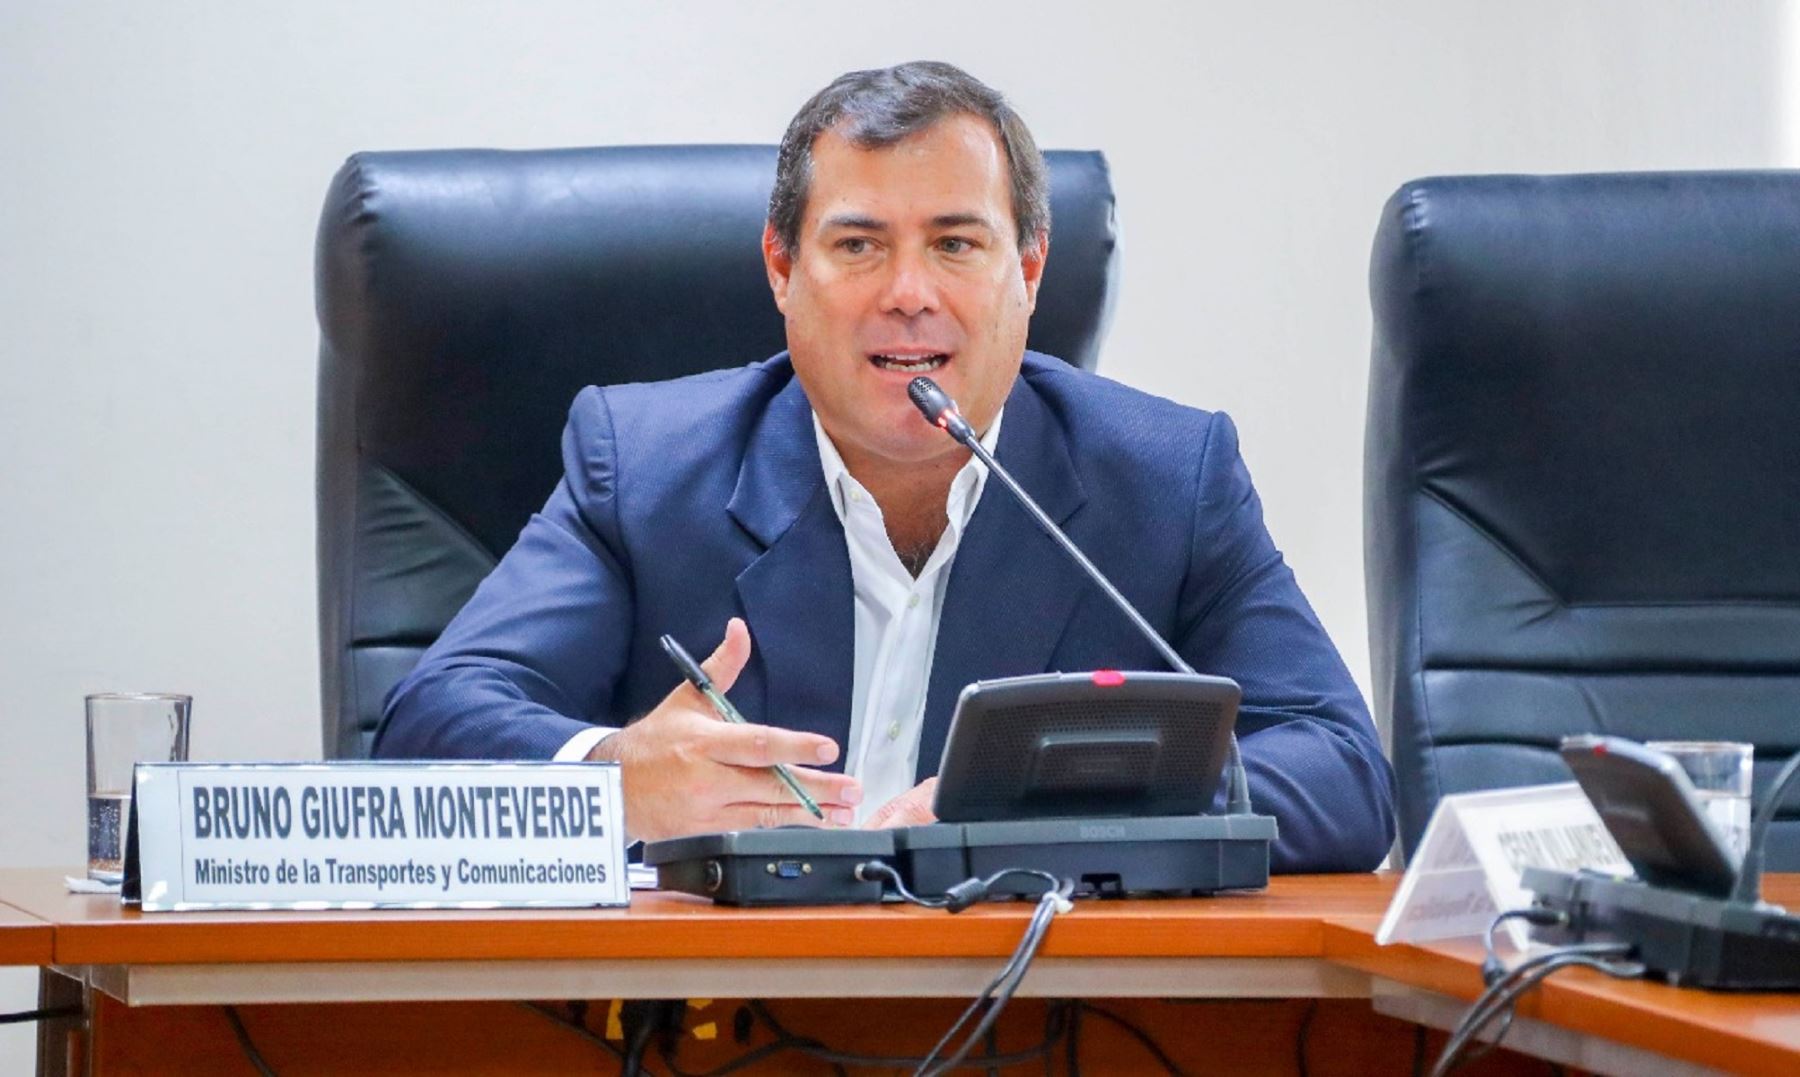 Ministro de Transporte, Bruno Giuffra afirma que su sector respeta a los pueblos indígenas y reservas naturales al elaborar proyectos.